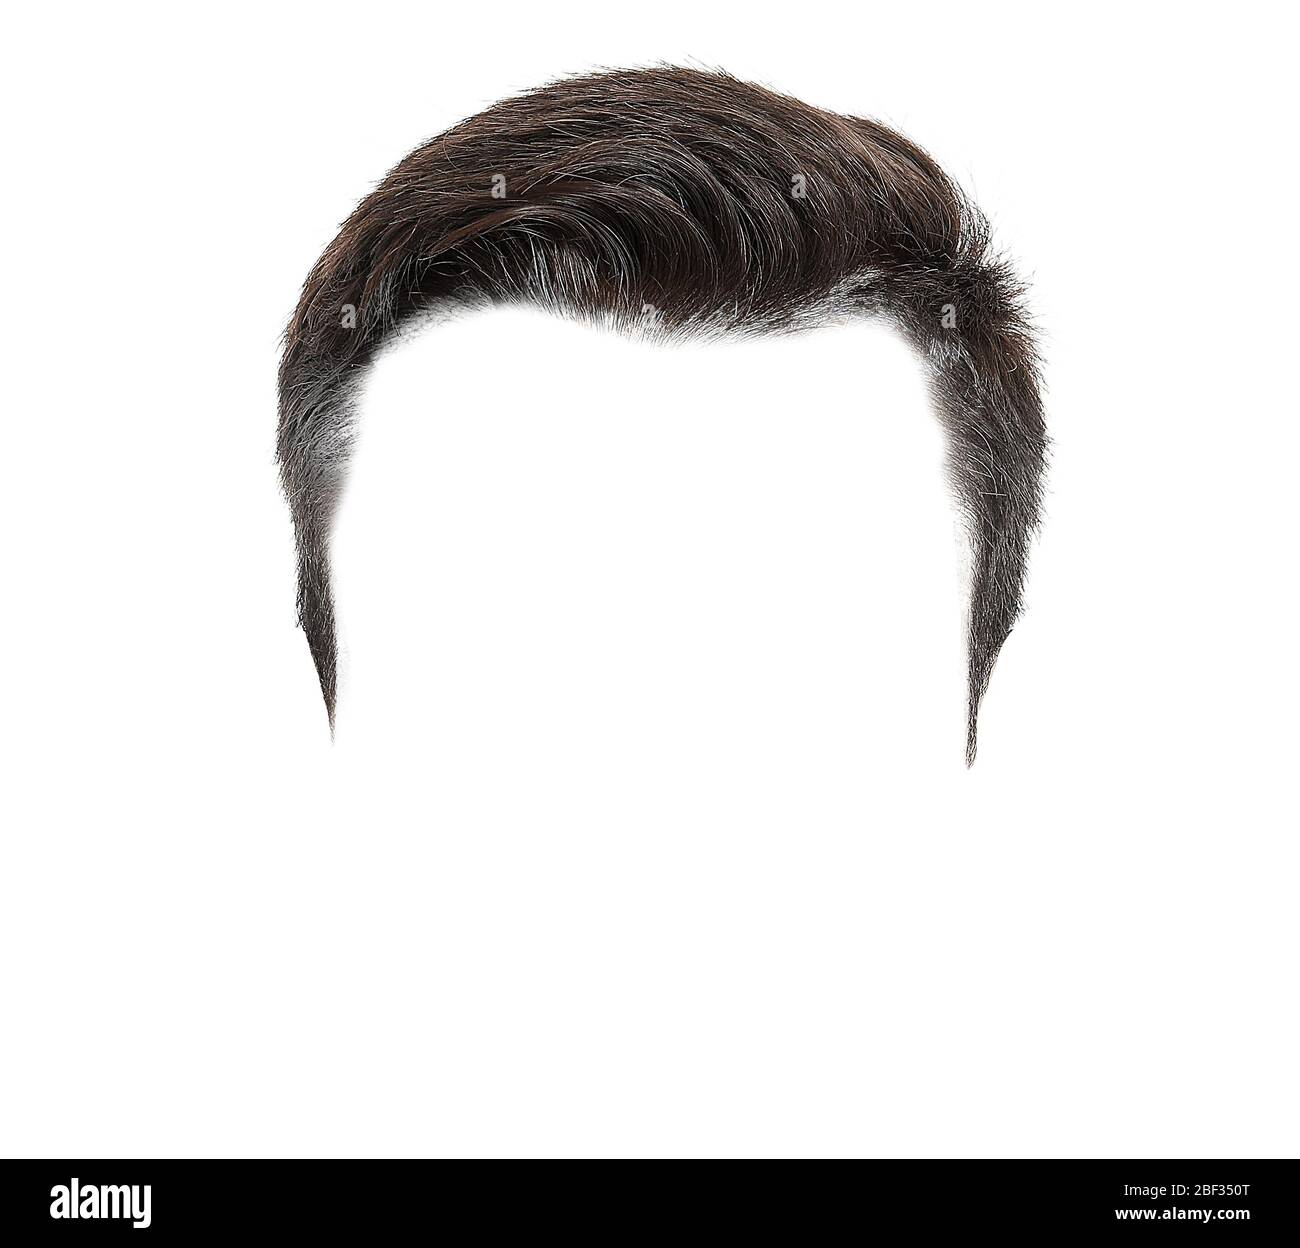 Detalles 70+ peinados hombre png - camera.edu.vn